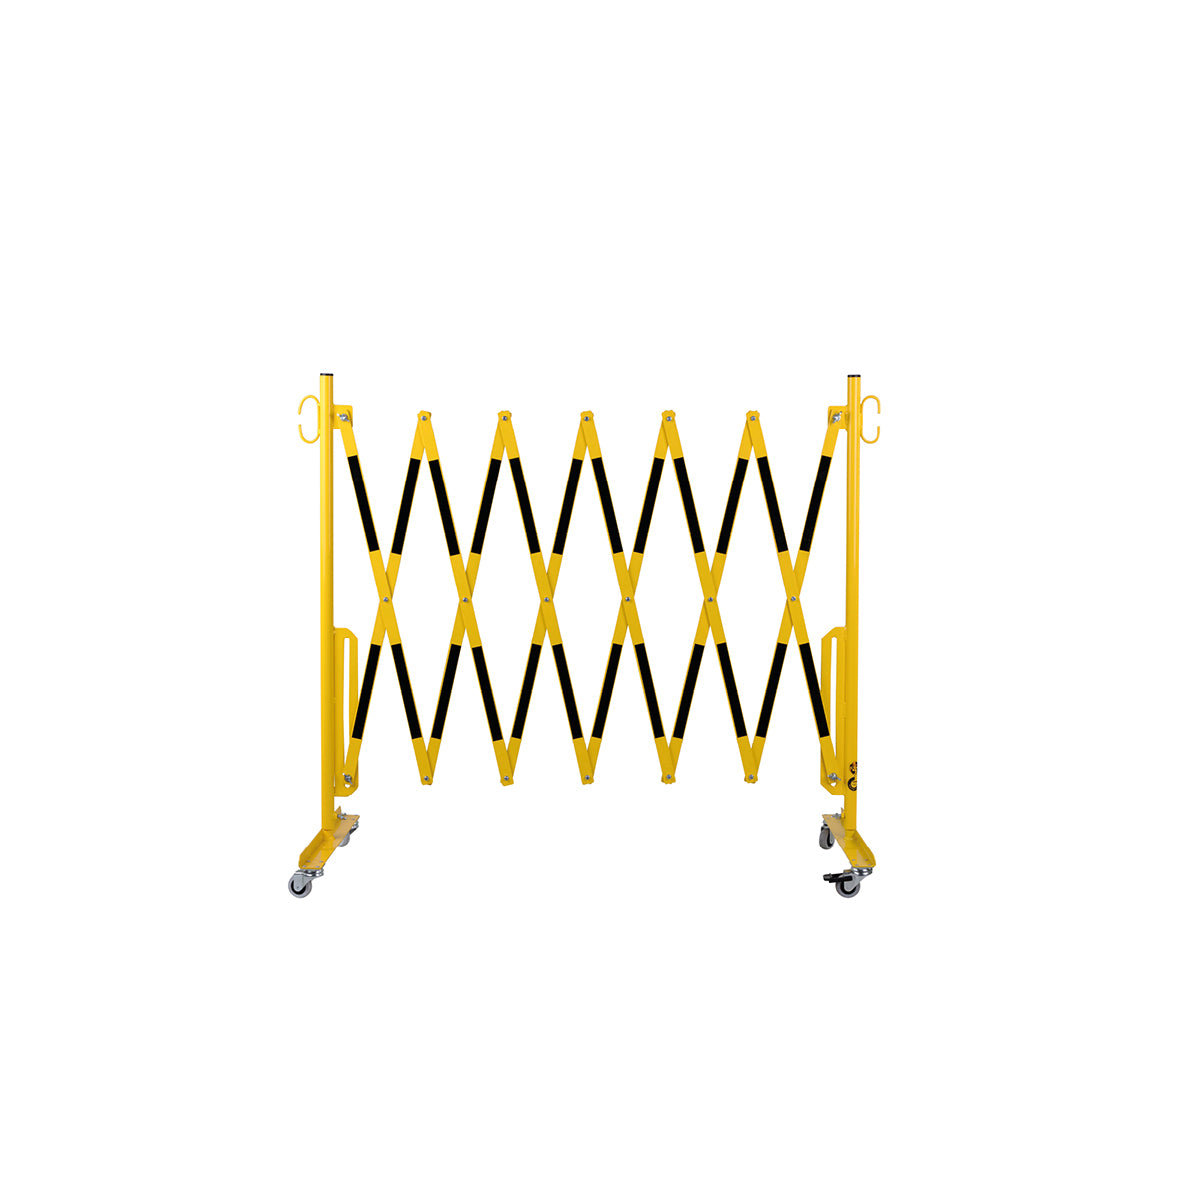 Scherensperre mit Rollen, Stahl, gelb-schwarz lackiert, Max. Breite 3.6 m. Gewicht: 12 kg, B/H/T: 380 x 950 x 450 mm, zusammengeklappt